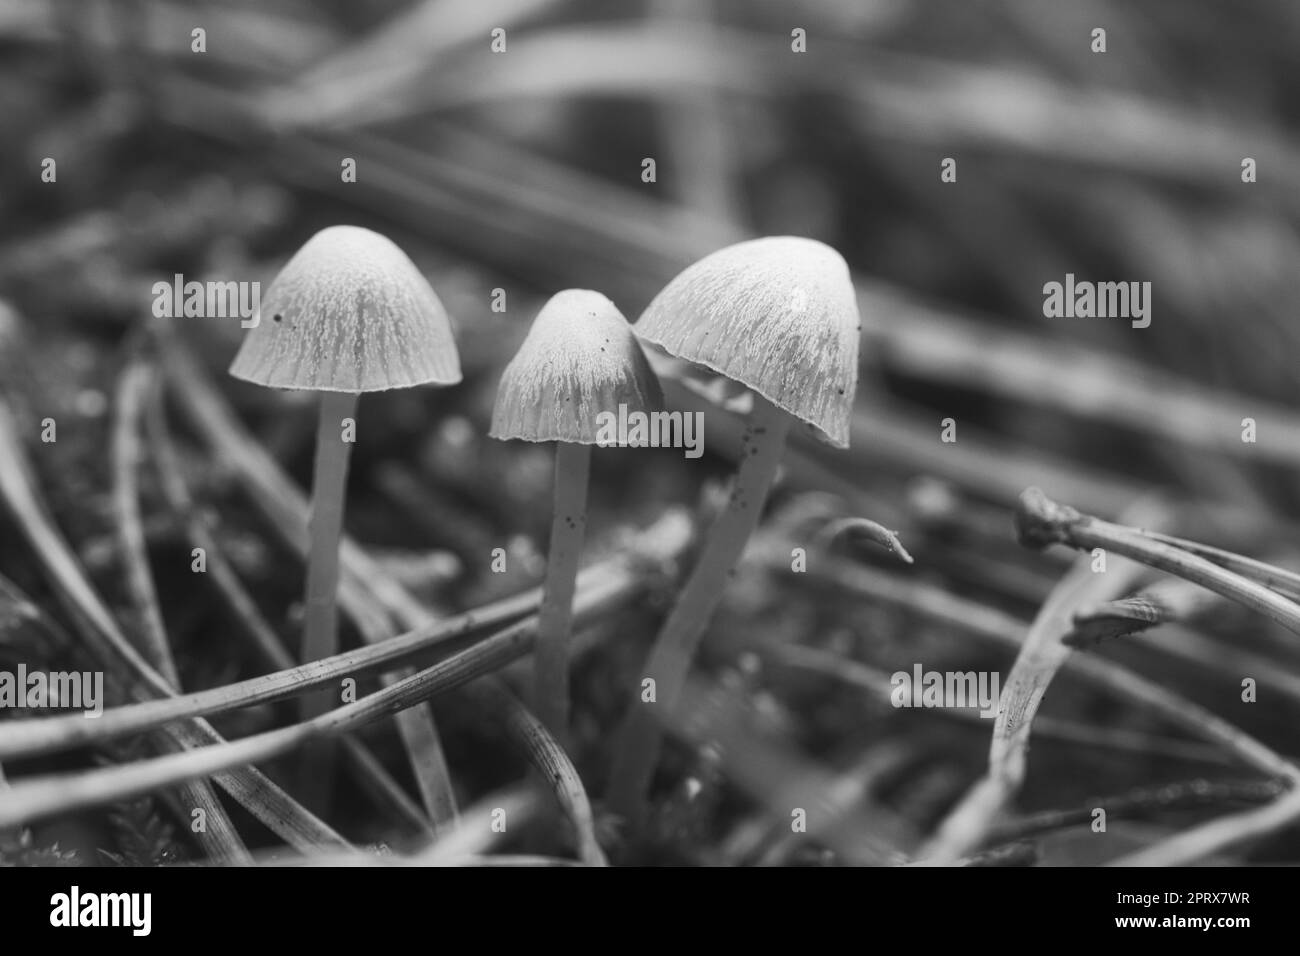 Un groupe de petits champignons en filigrane, pris en noir et blanc, sur le sol de la forêt en lumière douce. Photo macro de la nature Banque D'Images